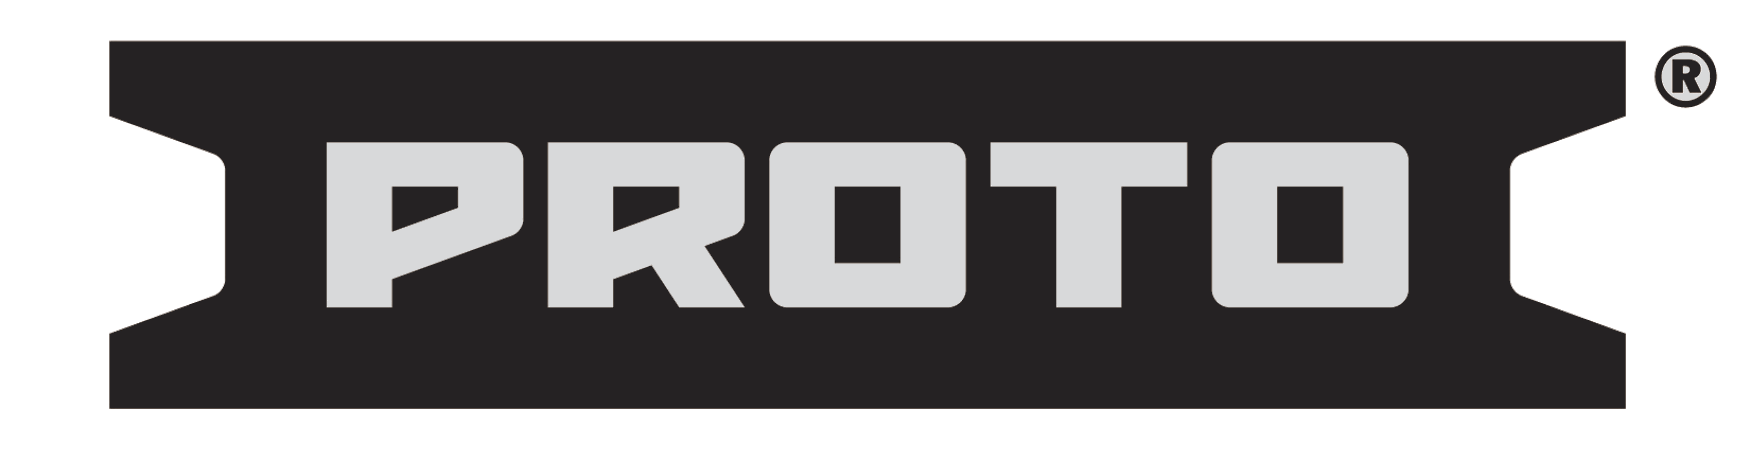 proto-logo.png